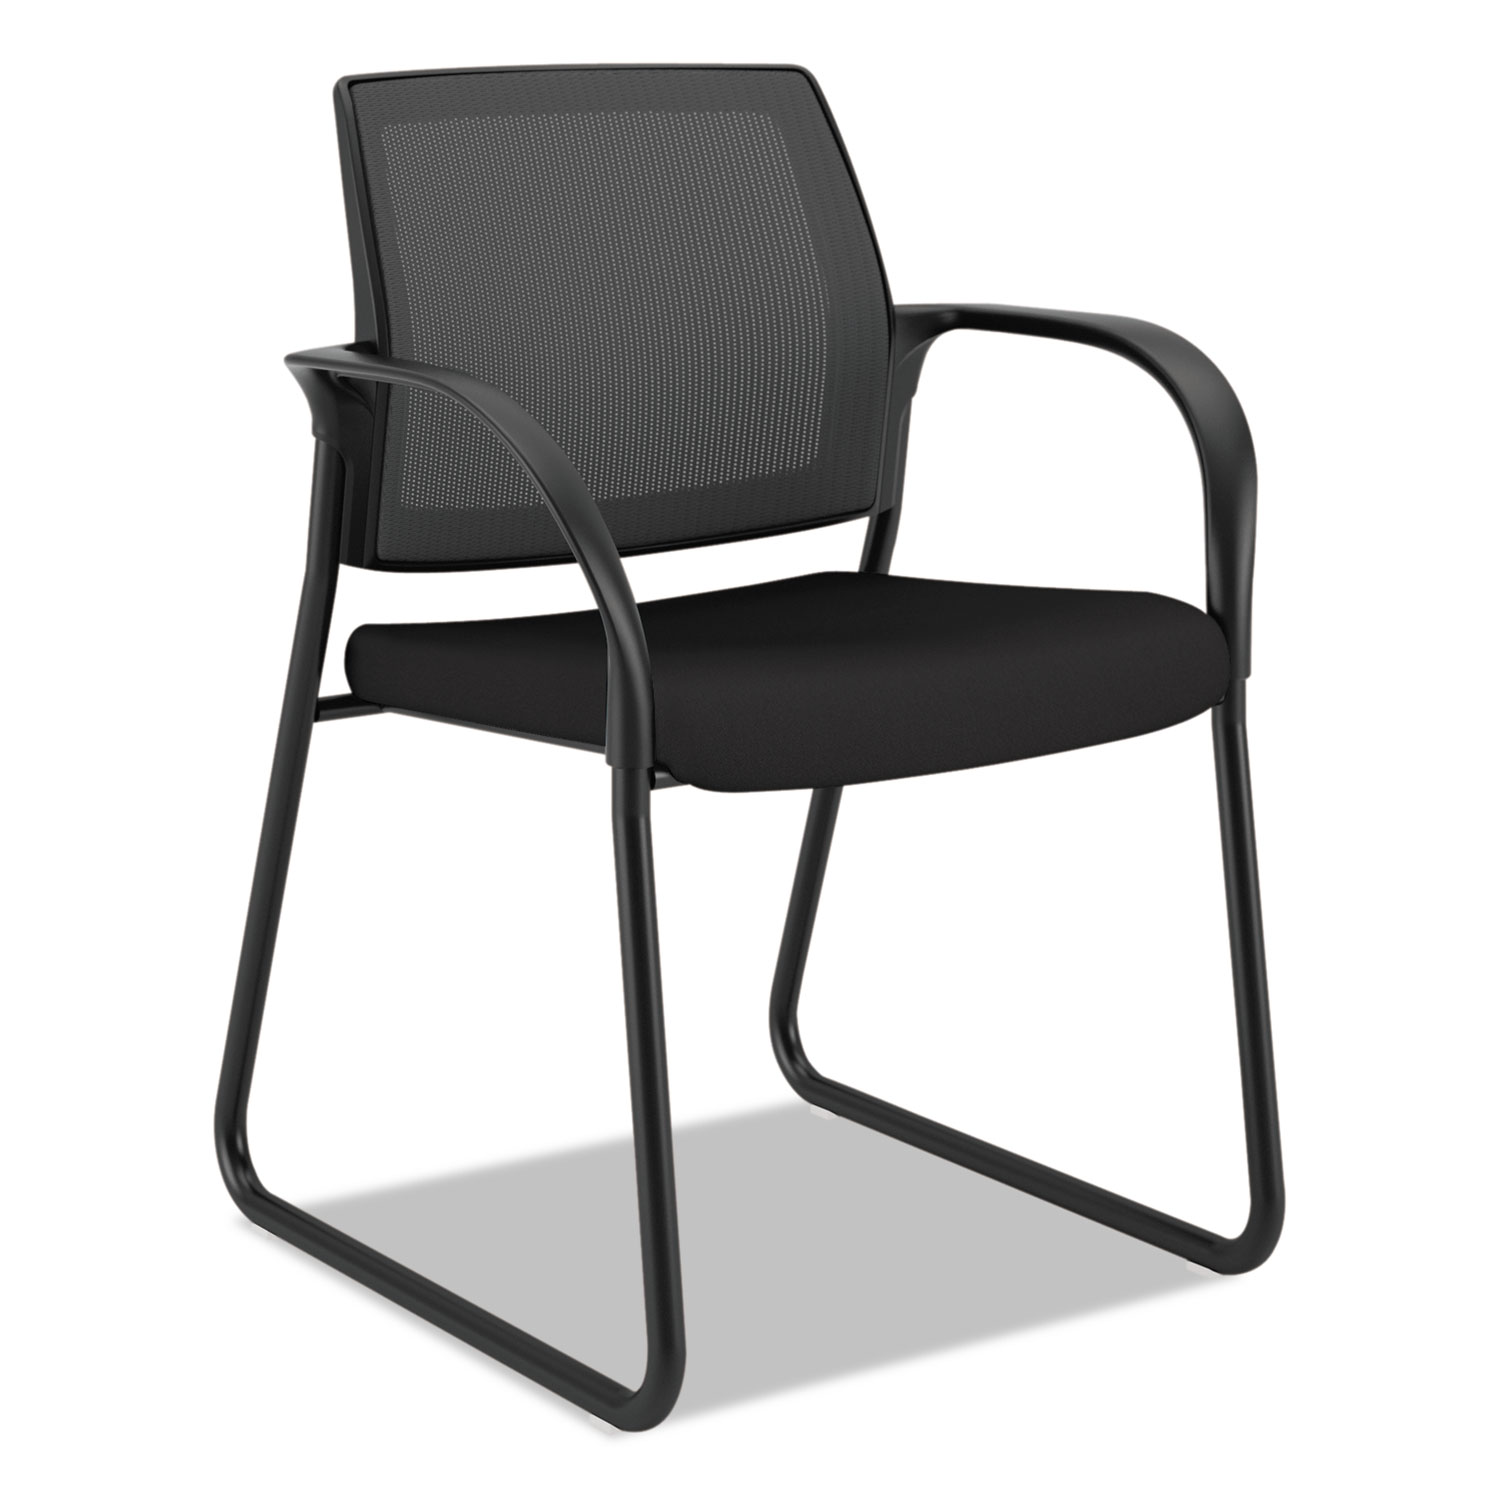 HON Ignition Chair - Black Fabric Seat - Black Mesh Back - Black Steel Frame - Sled Base - Black - Armrest